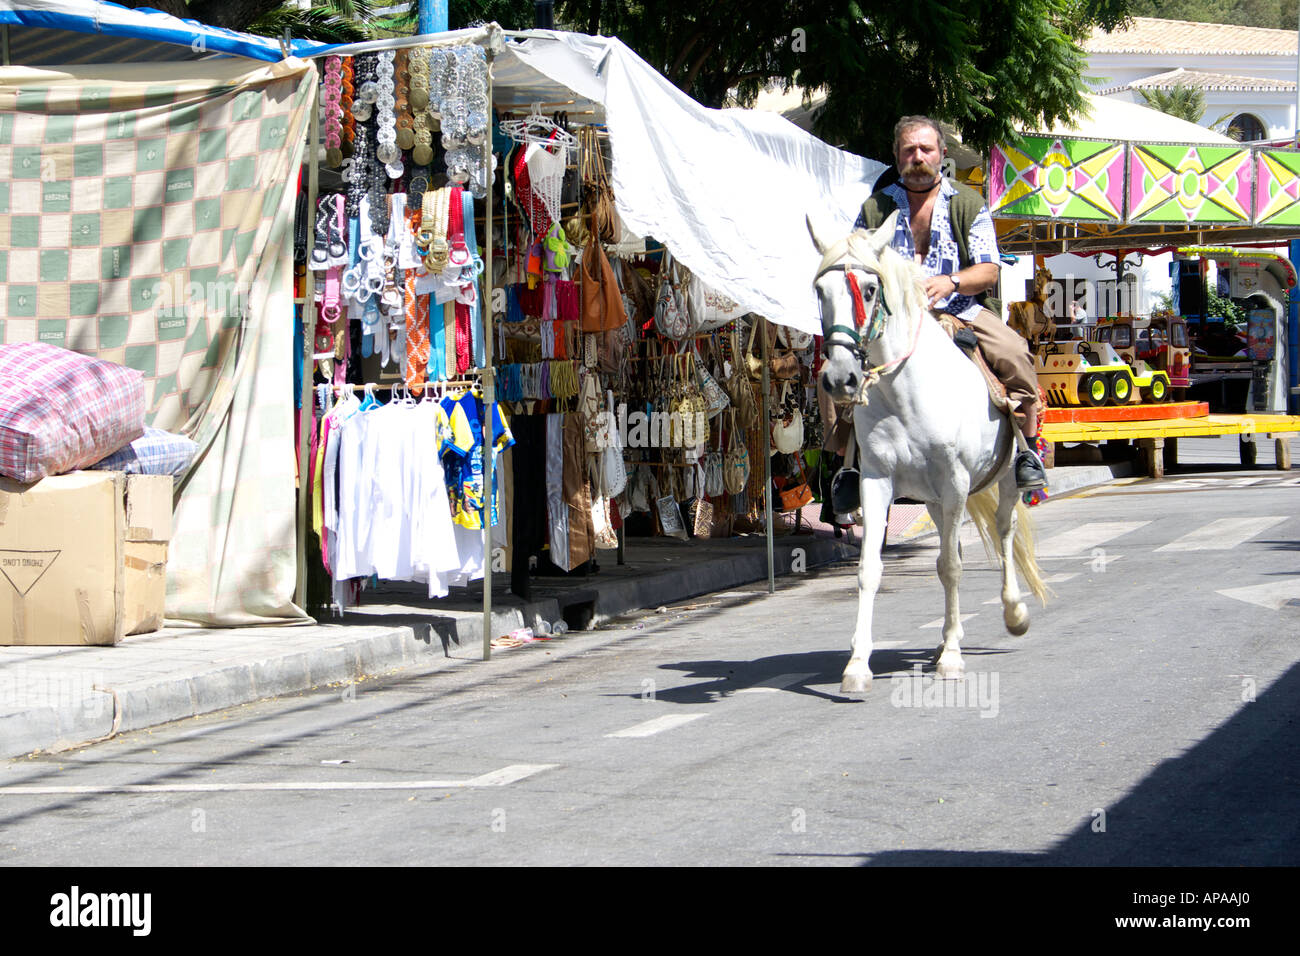 Man riding a white horse at the Mijas Feria, Spain Stock Photo